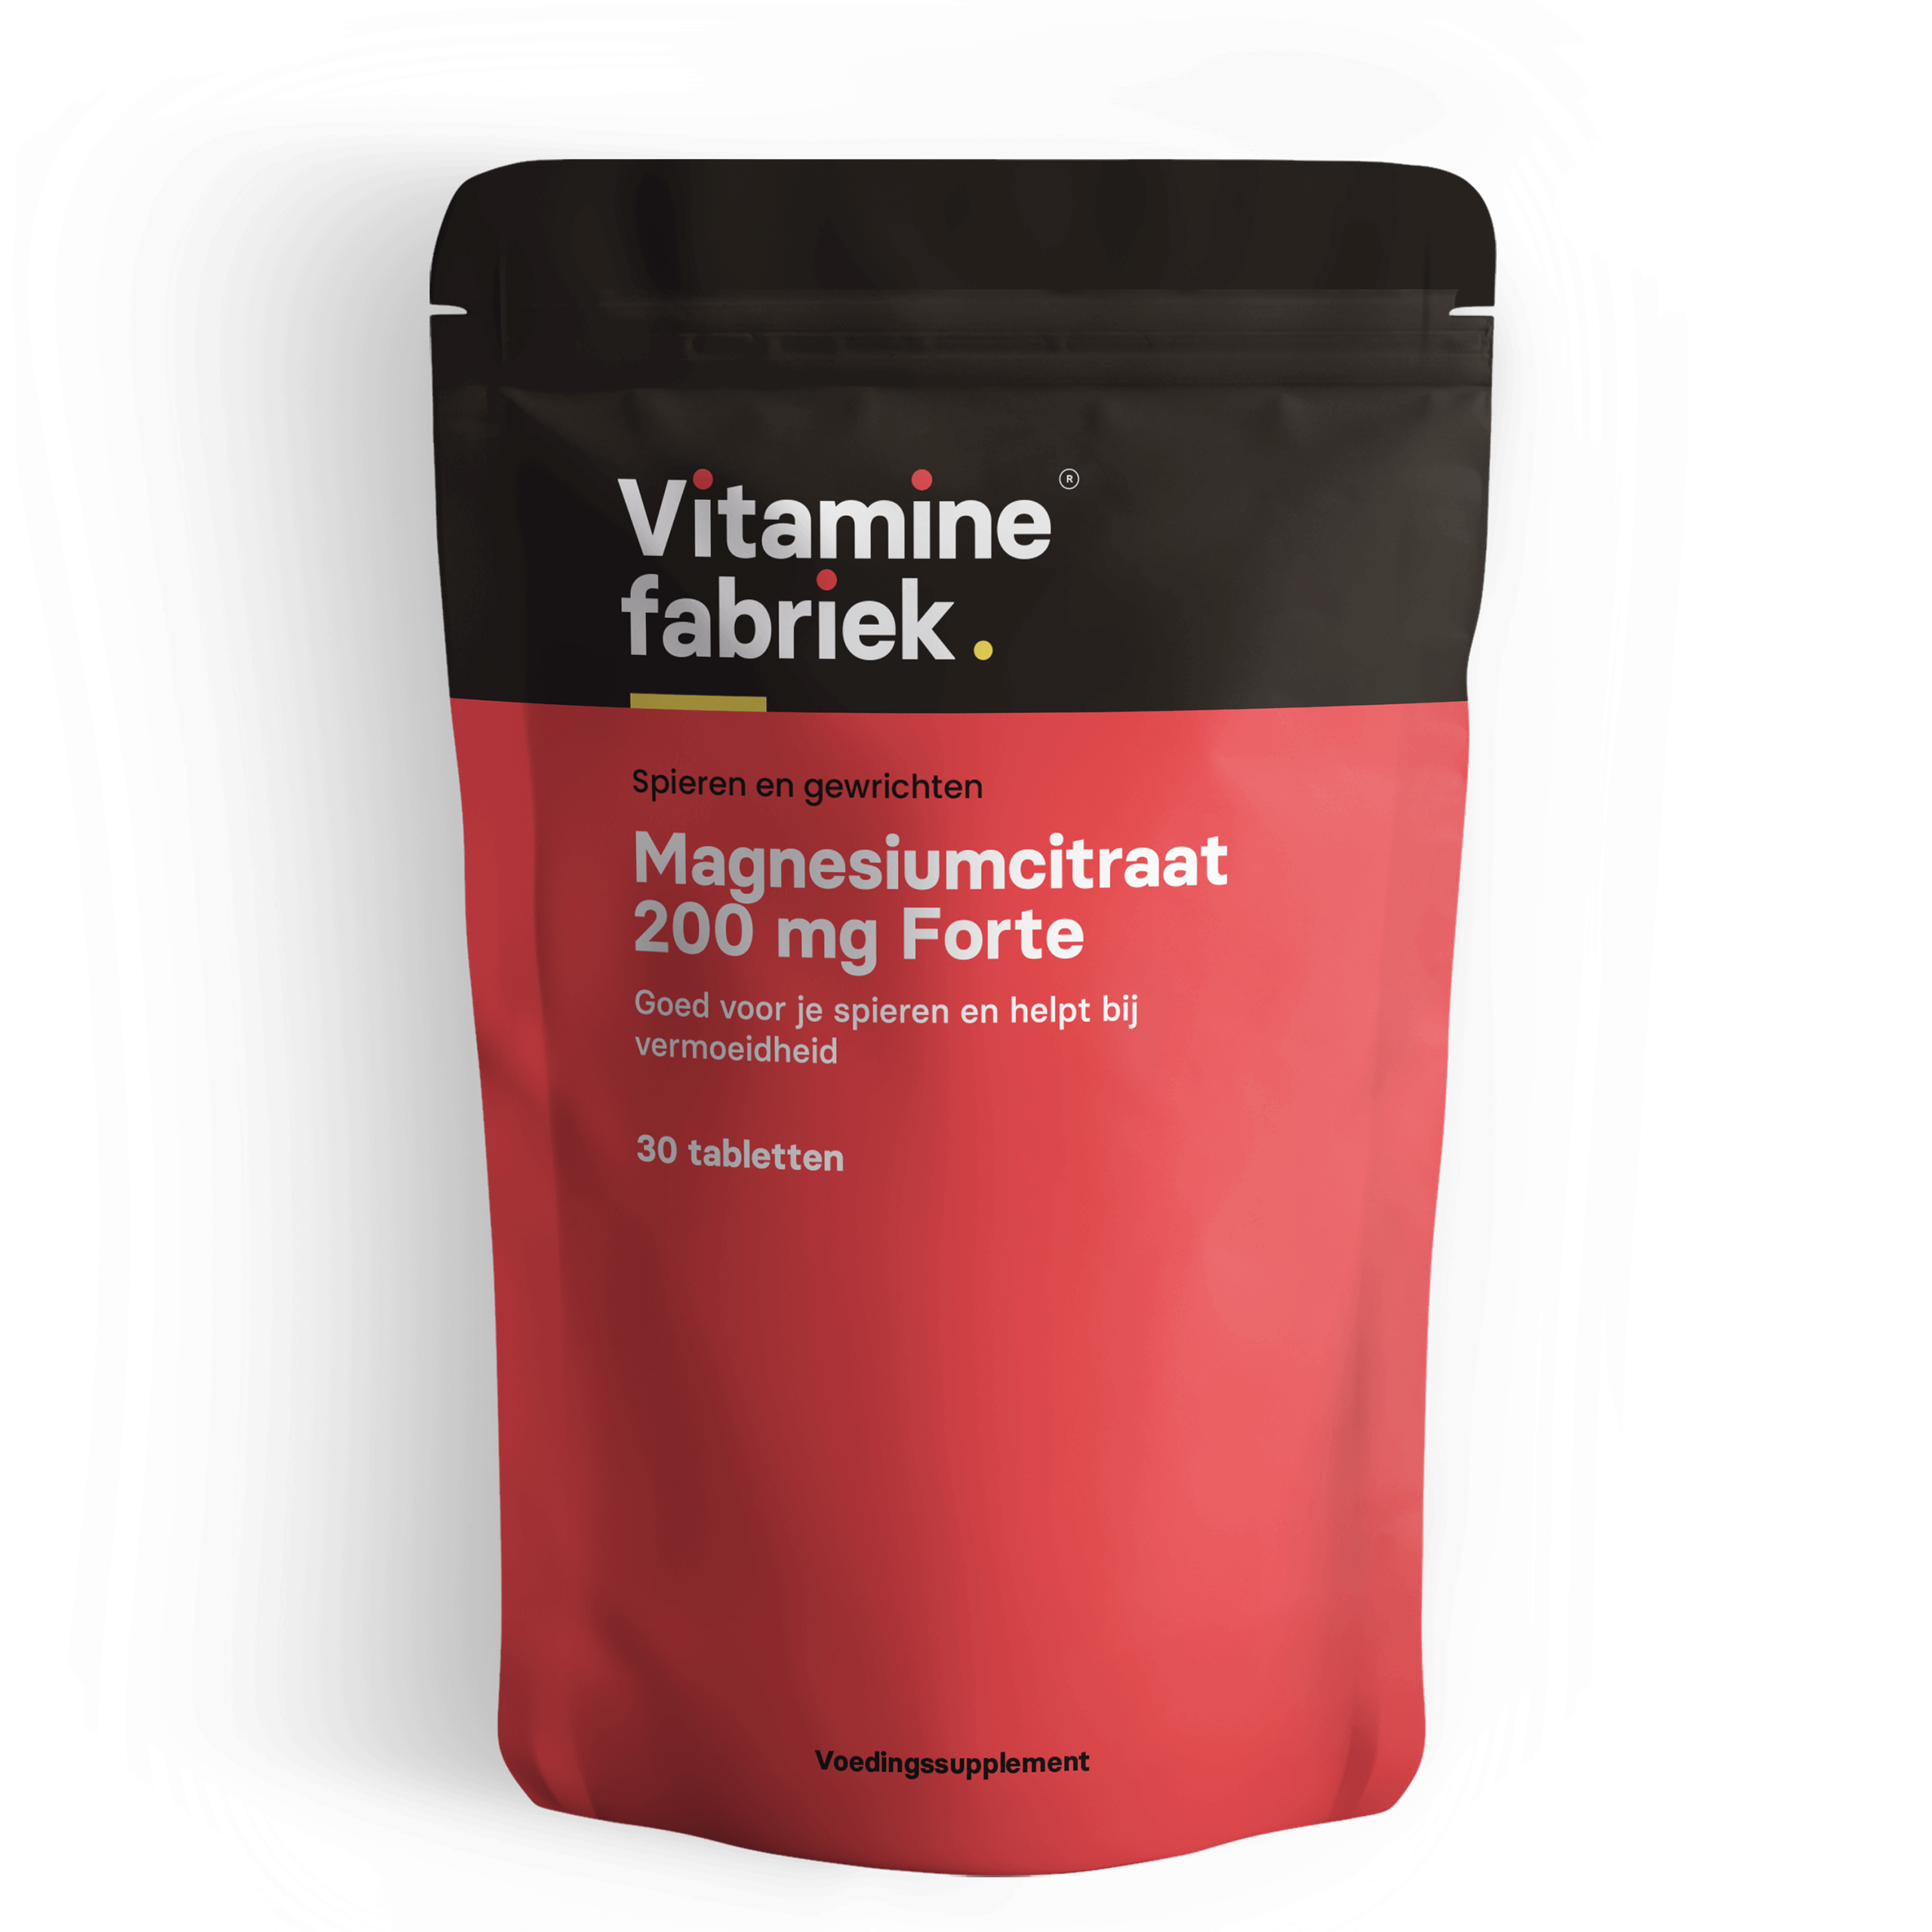 Magnesiumcitraat - 200 mg Forte - 30 tabletten - Vitaminefabriek.nl